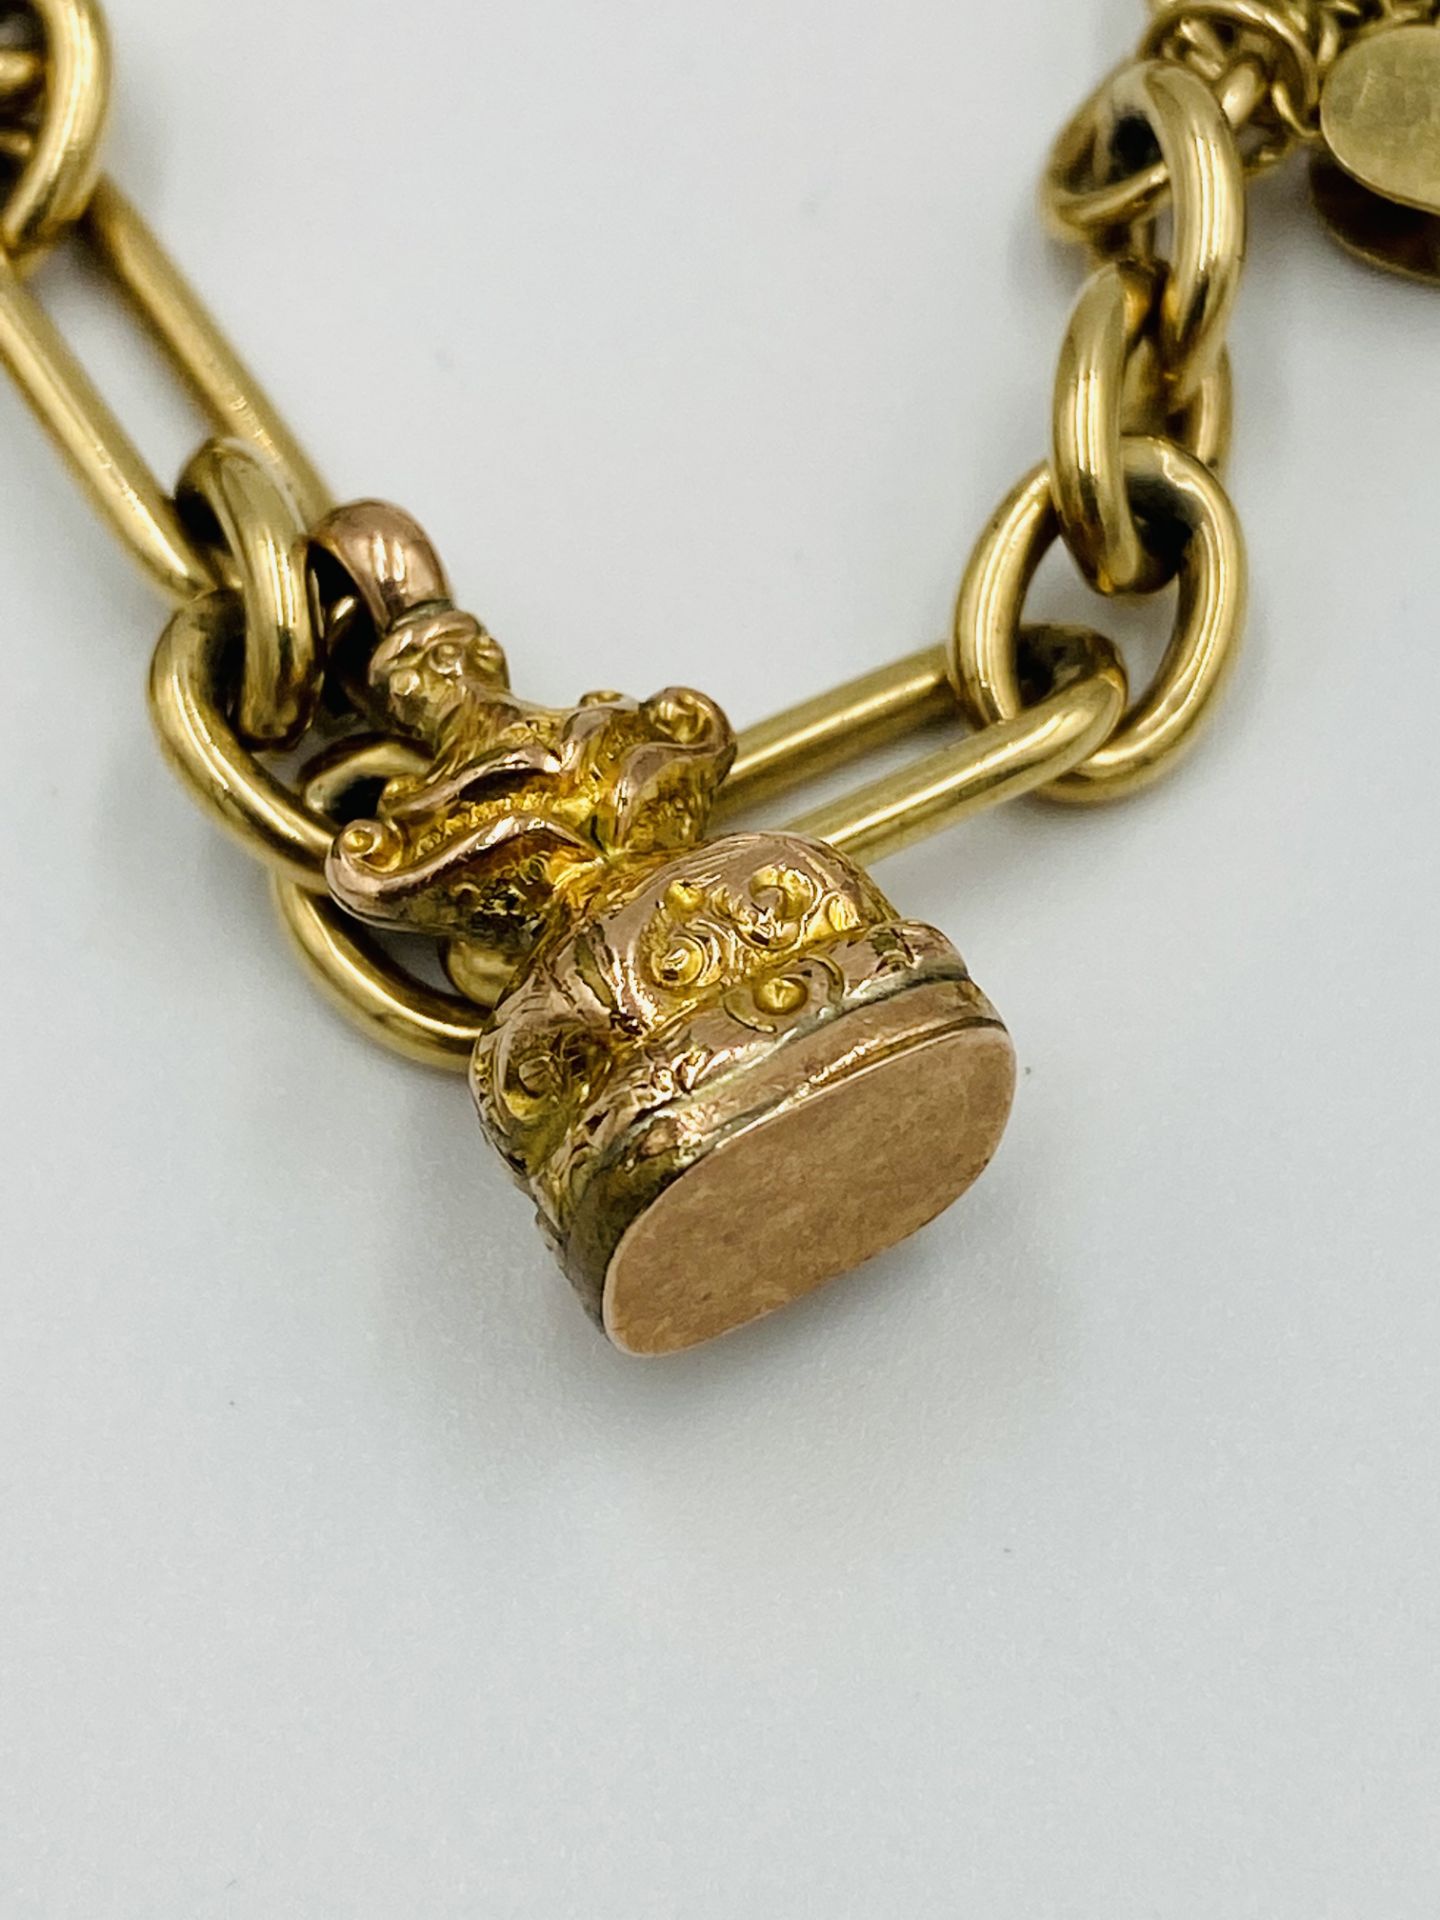 9ct gold long link charm bracelet - Image 5 of 6